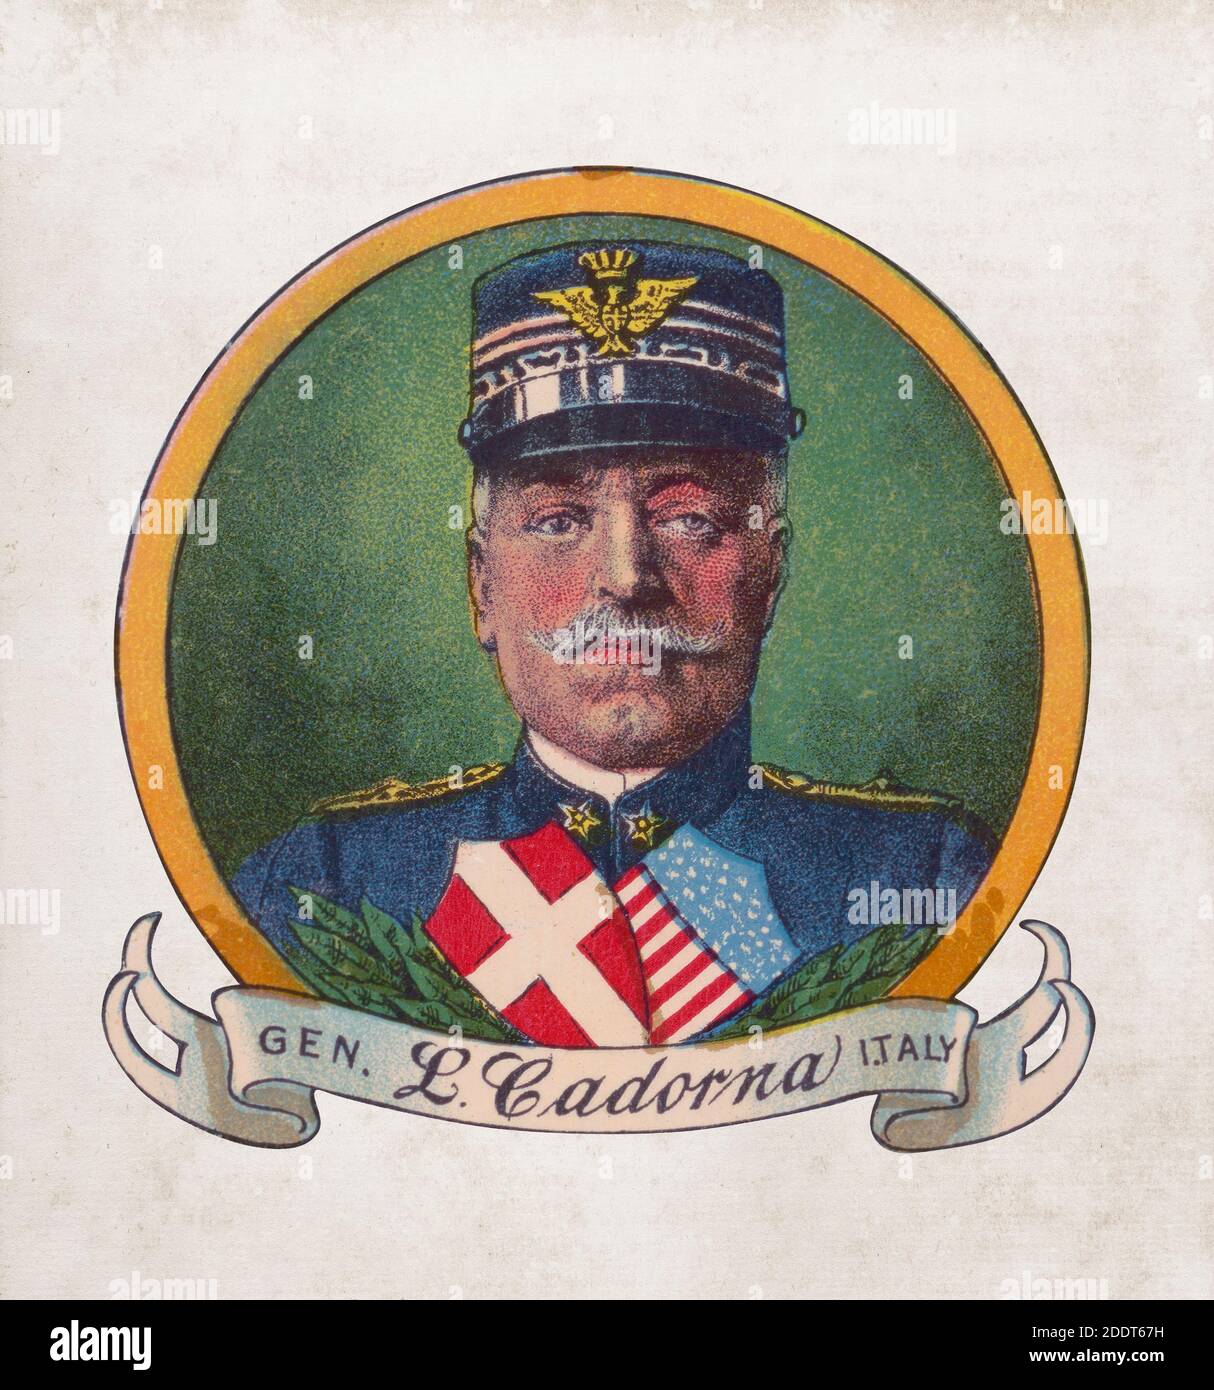 Ritratto a colori retrò del generale italiano Luigi Cadorna. Luigi Cadorna, OSML, OCI (1850 – 1928), è stato un generale e maresciallo italiano Foto Stock